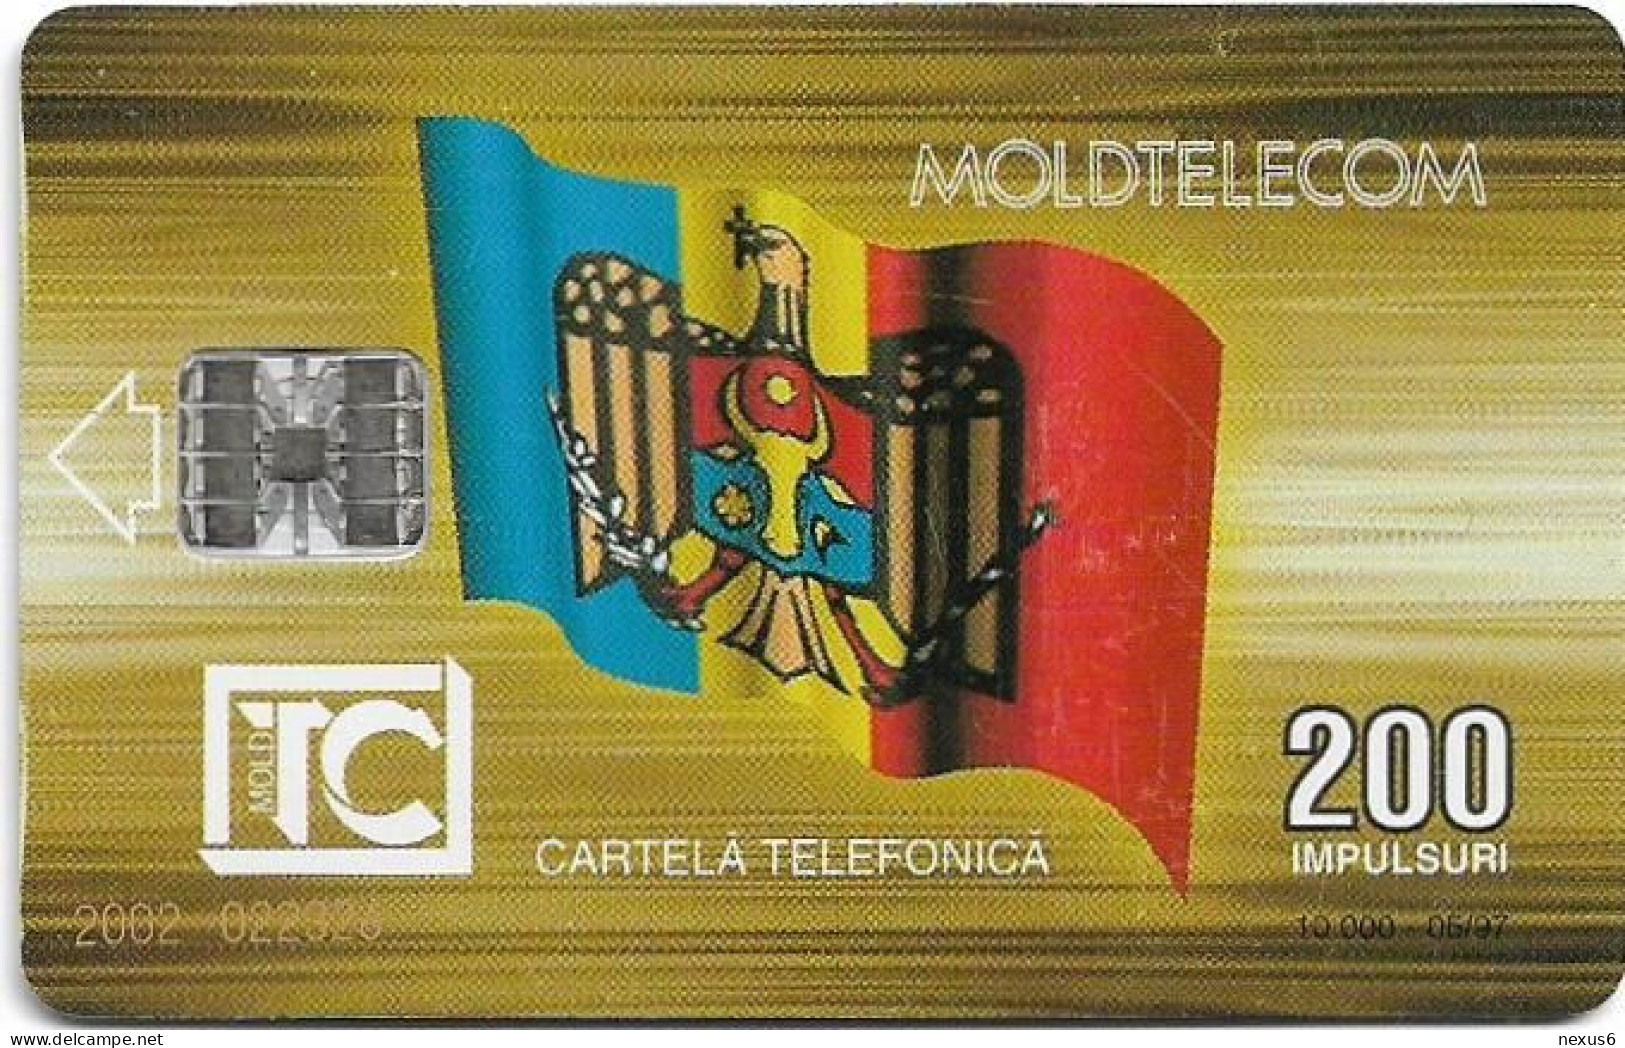 Moldova - Moldtelecom - Flag 3rd Issue, SC7, 05.1997, 200U, 10.000ex, Used - Moldavia